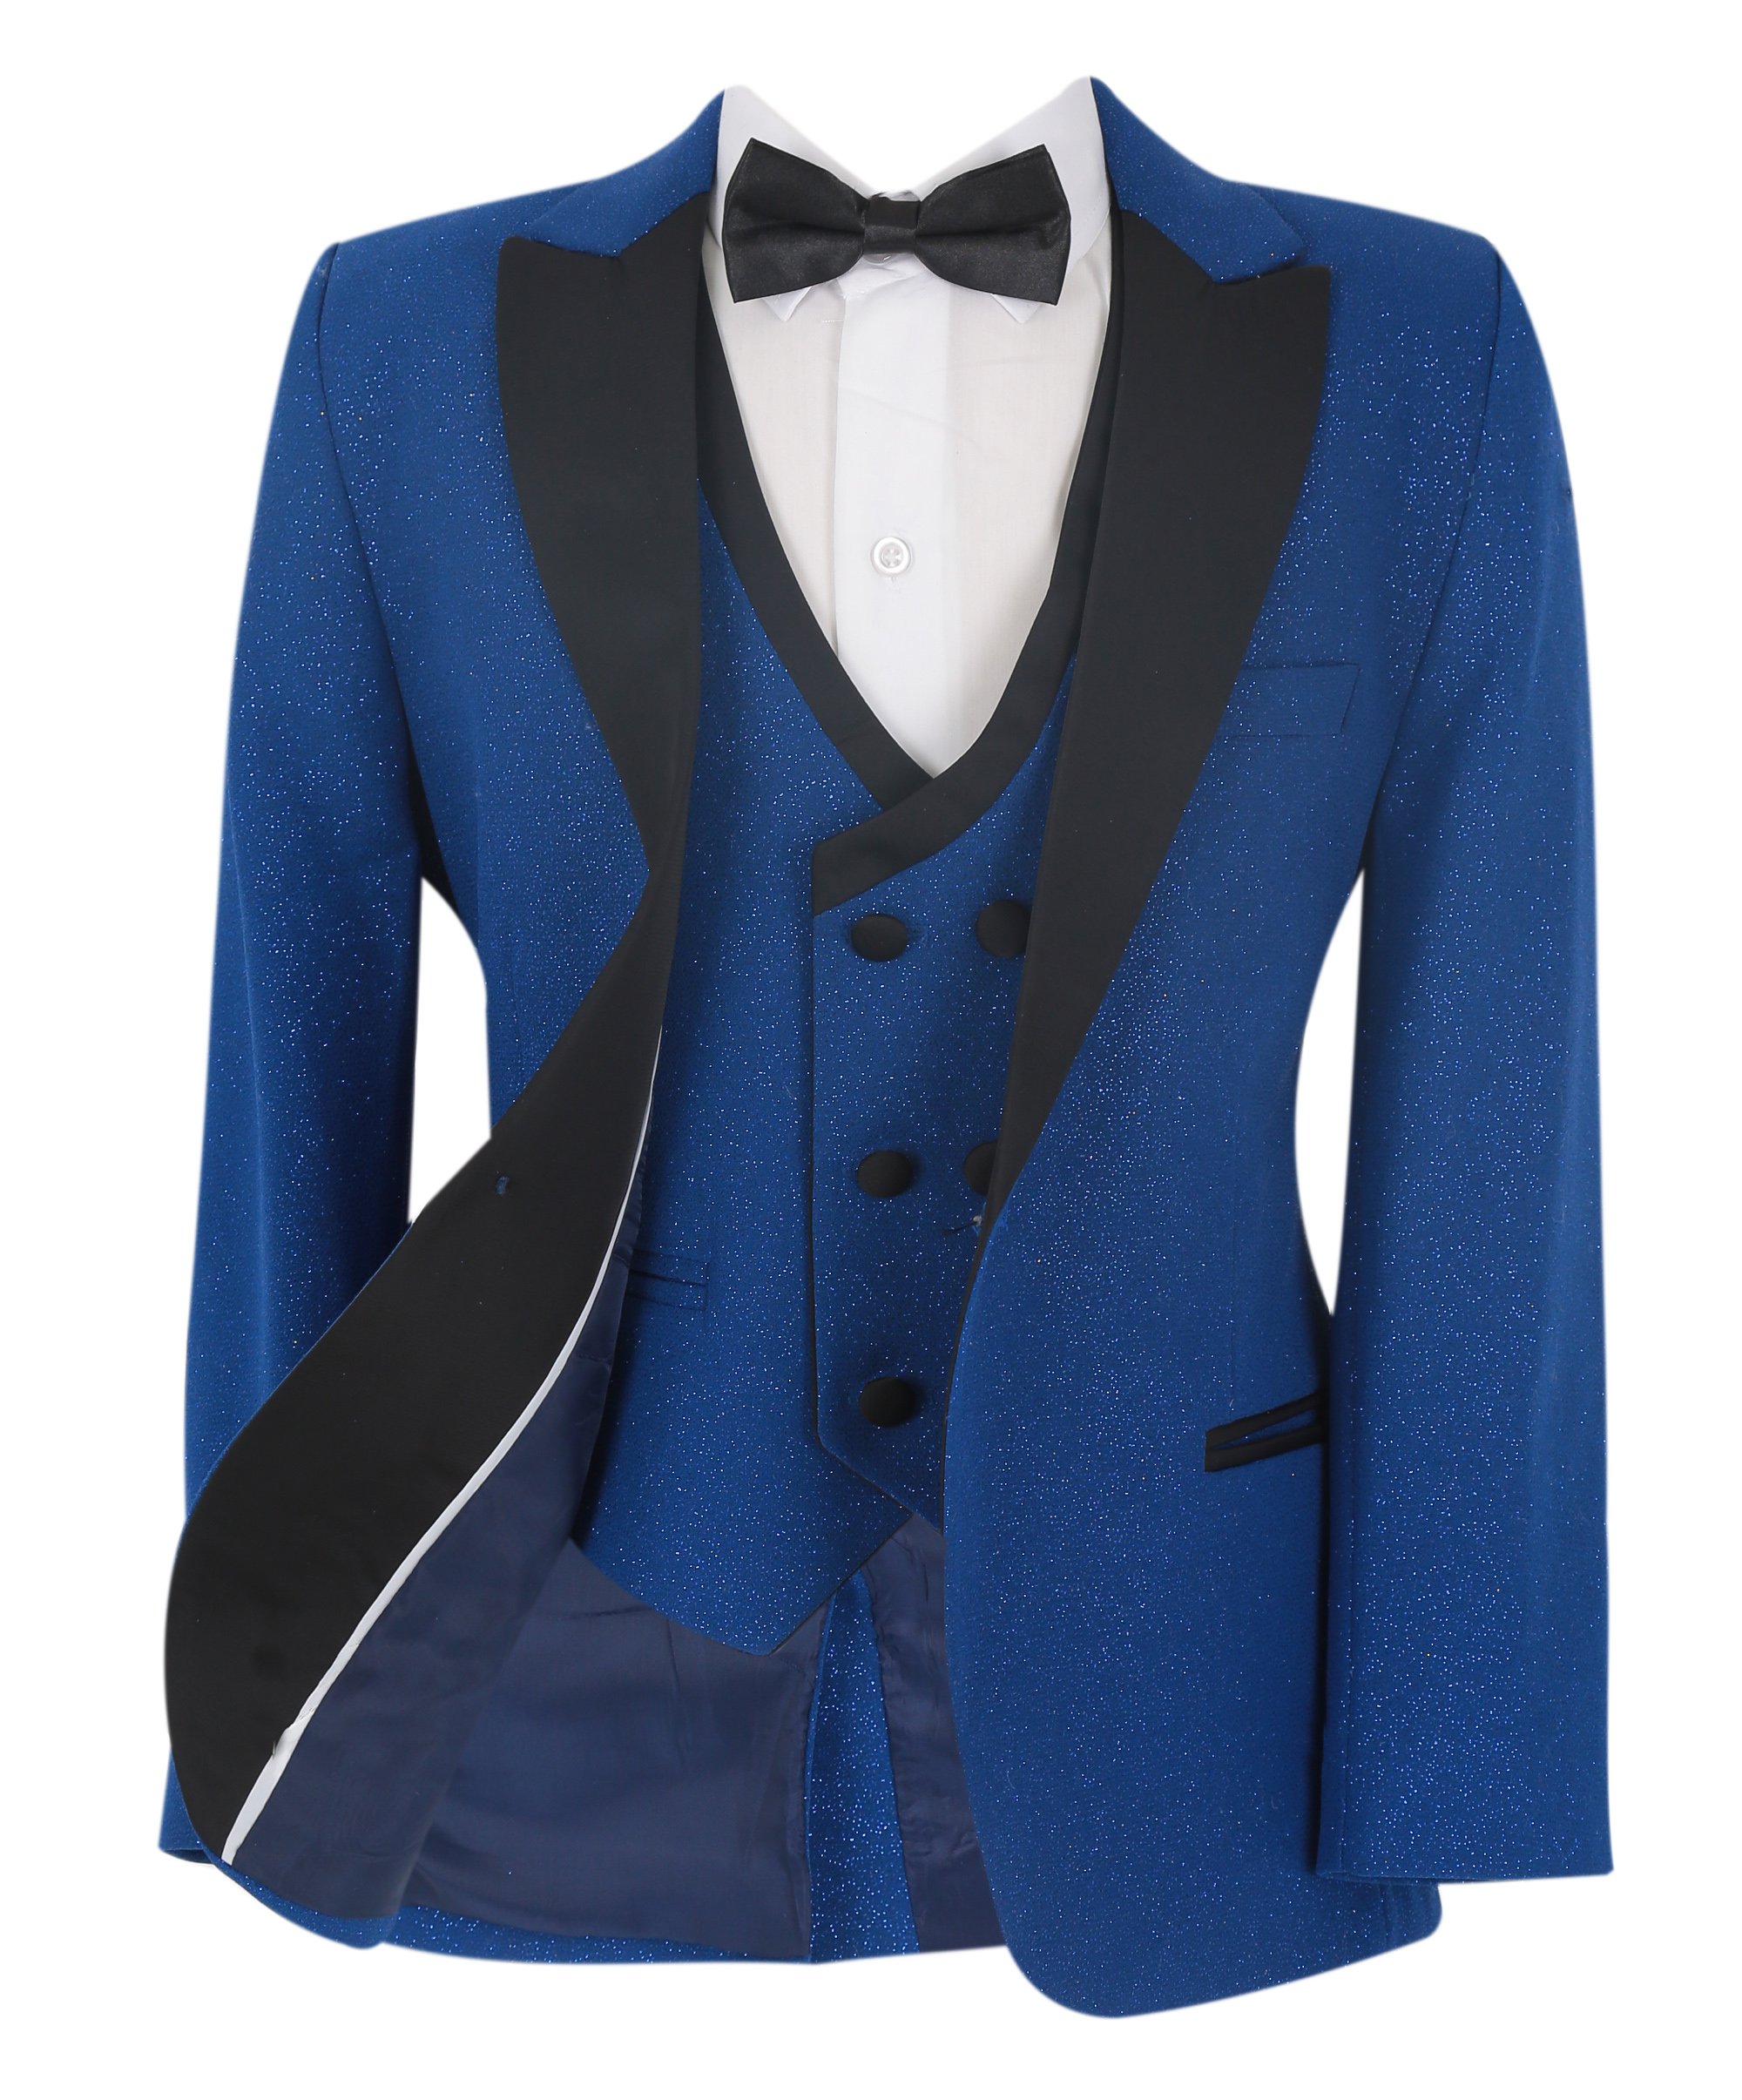 Boys Glittery Slim Fit Tuxedo Dinner Suit - Blue